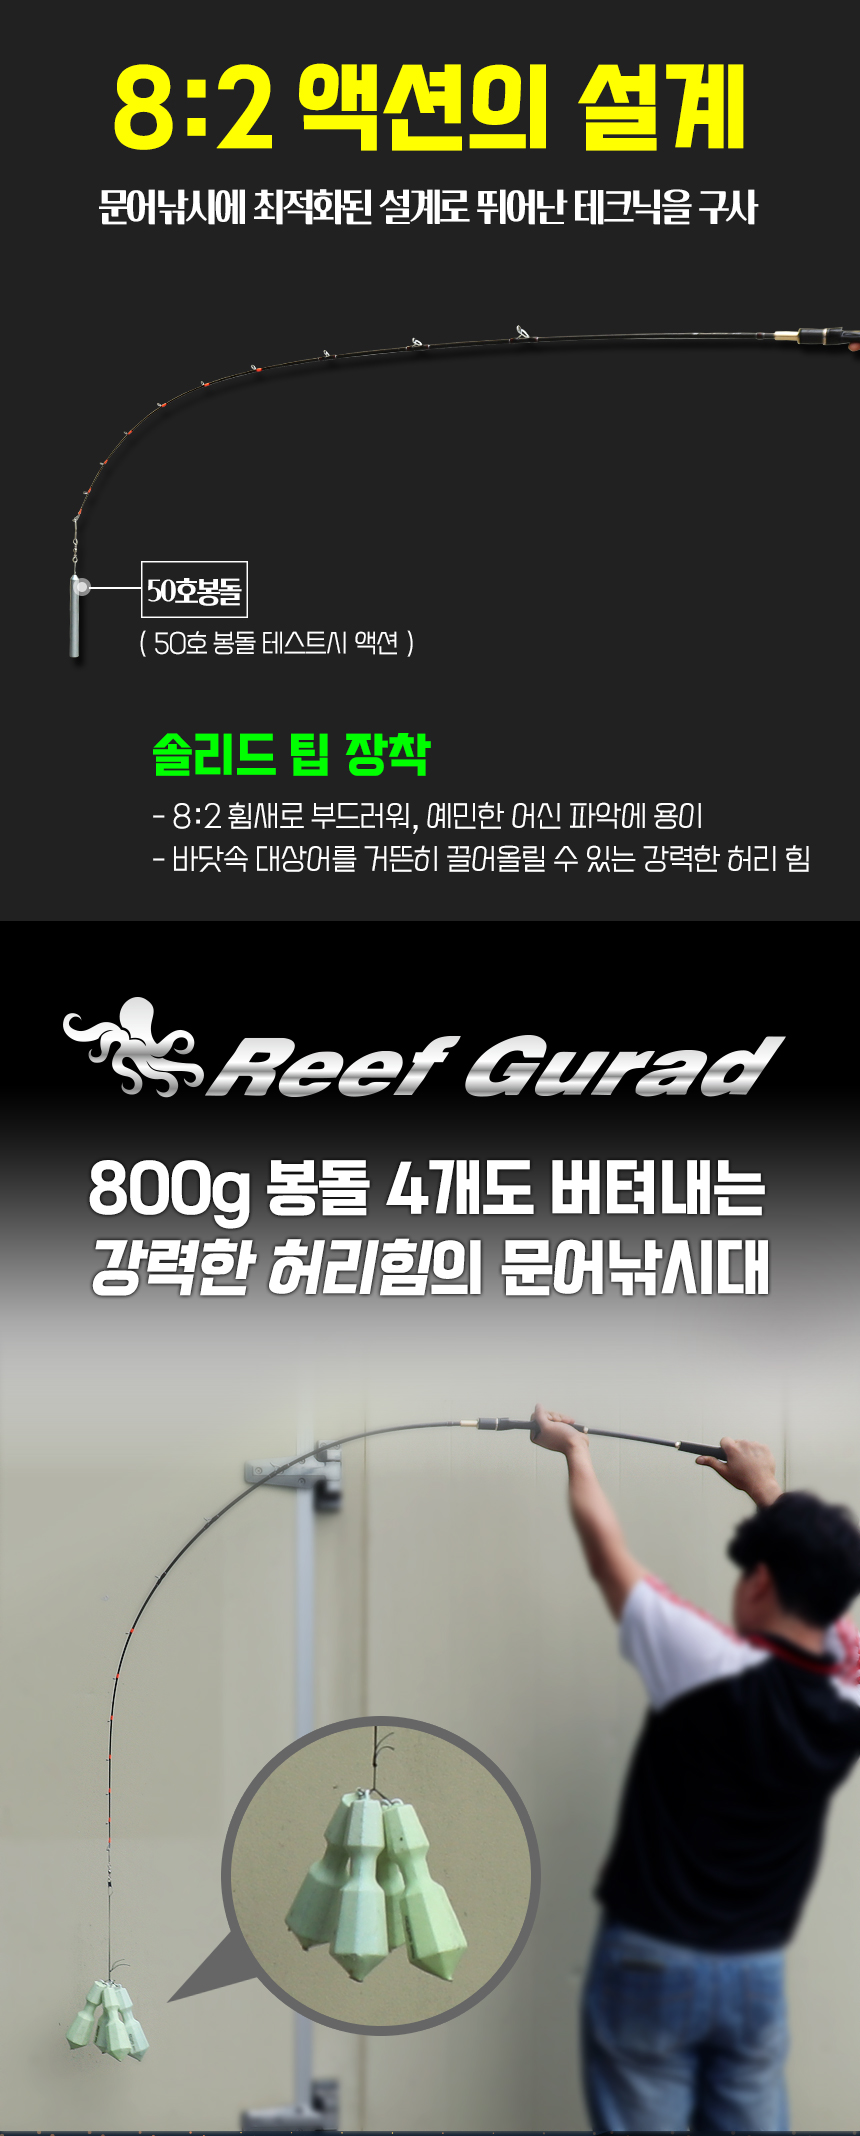 reef_guard_03.jpg